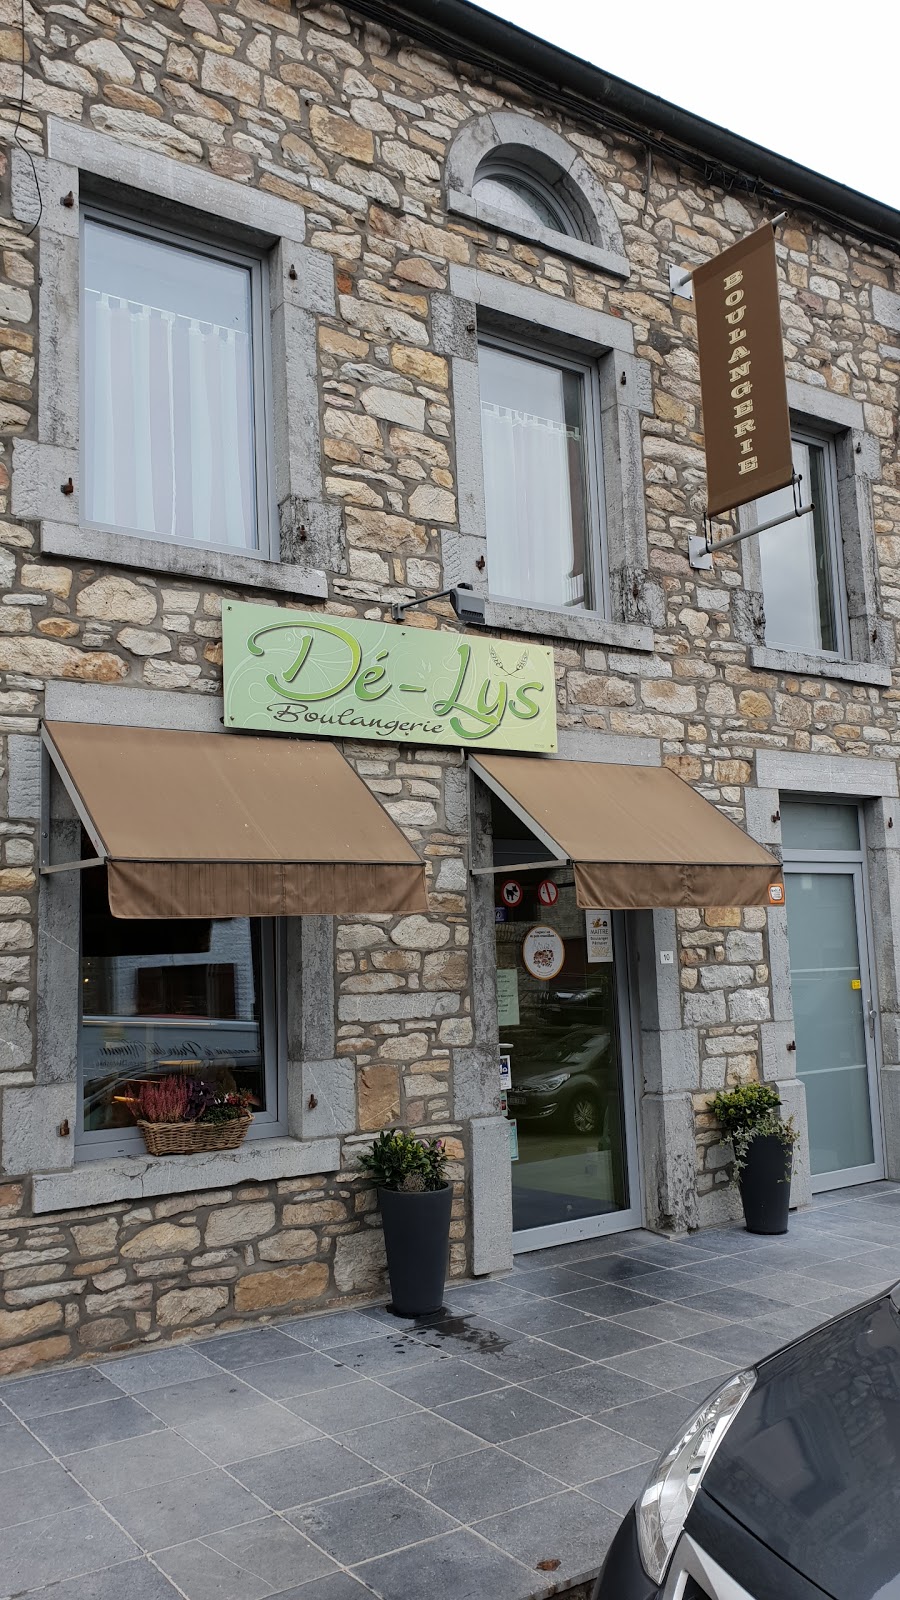 Boulangerie Dé-Lys